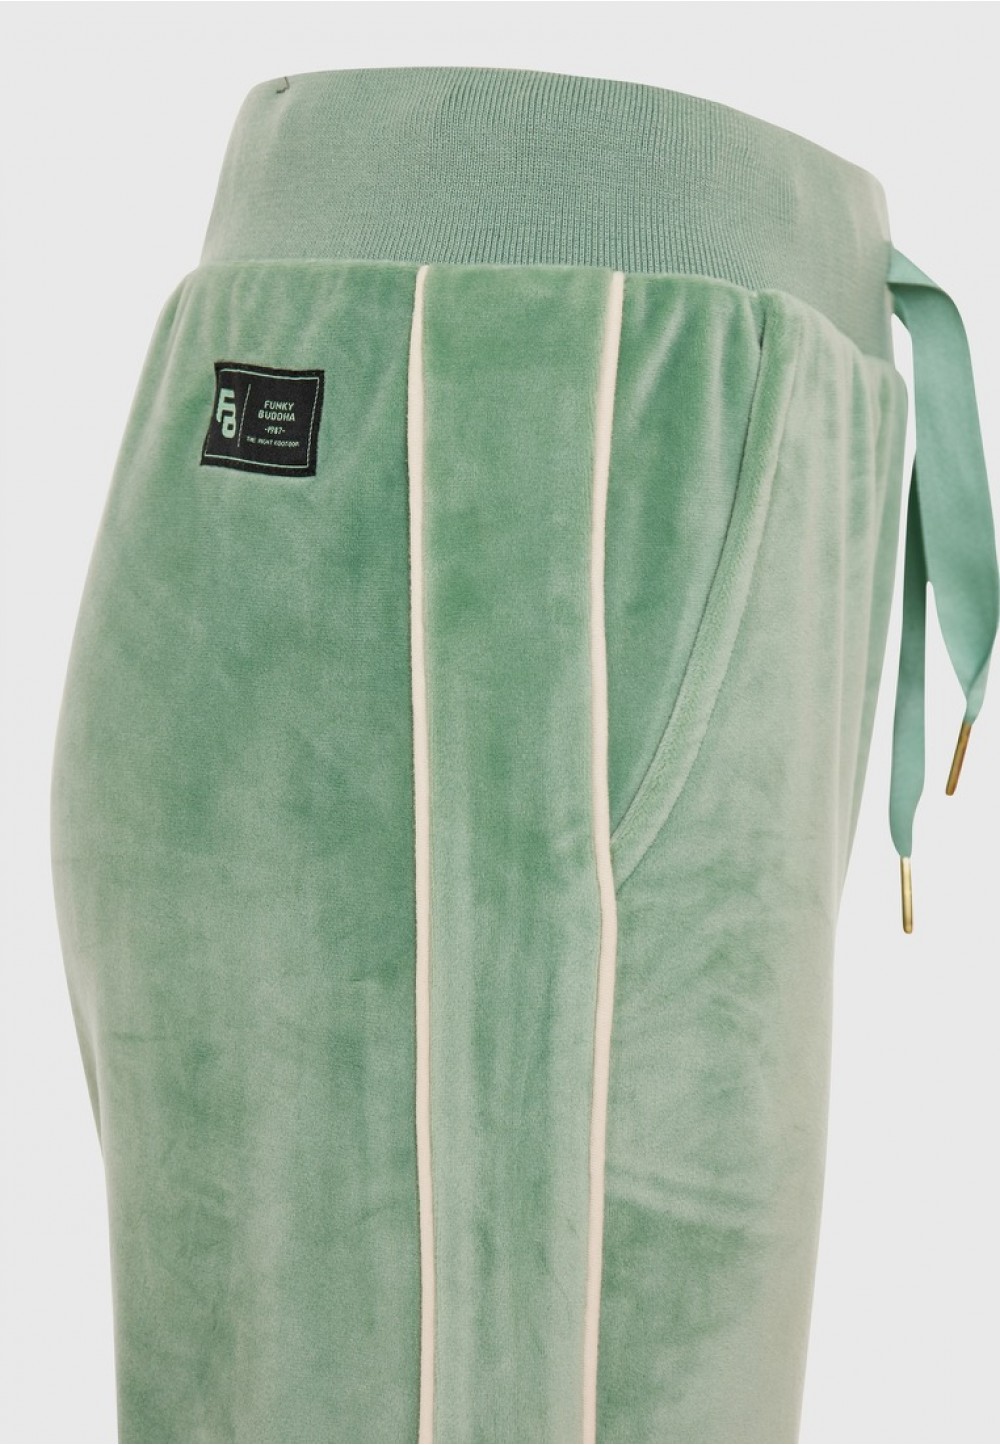 Жіночі спортивні штани в ніжно-зеленому оксамиті